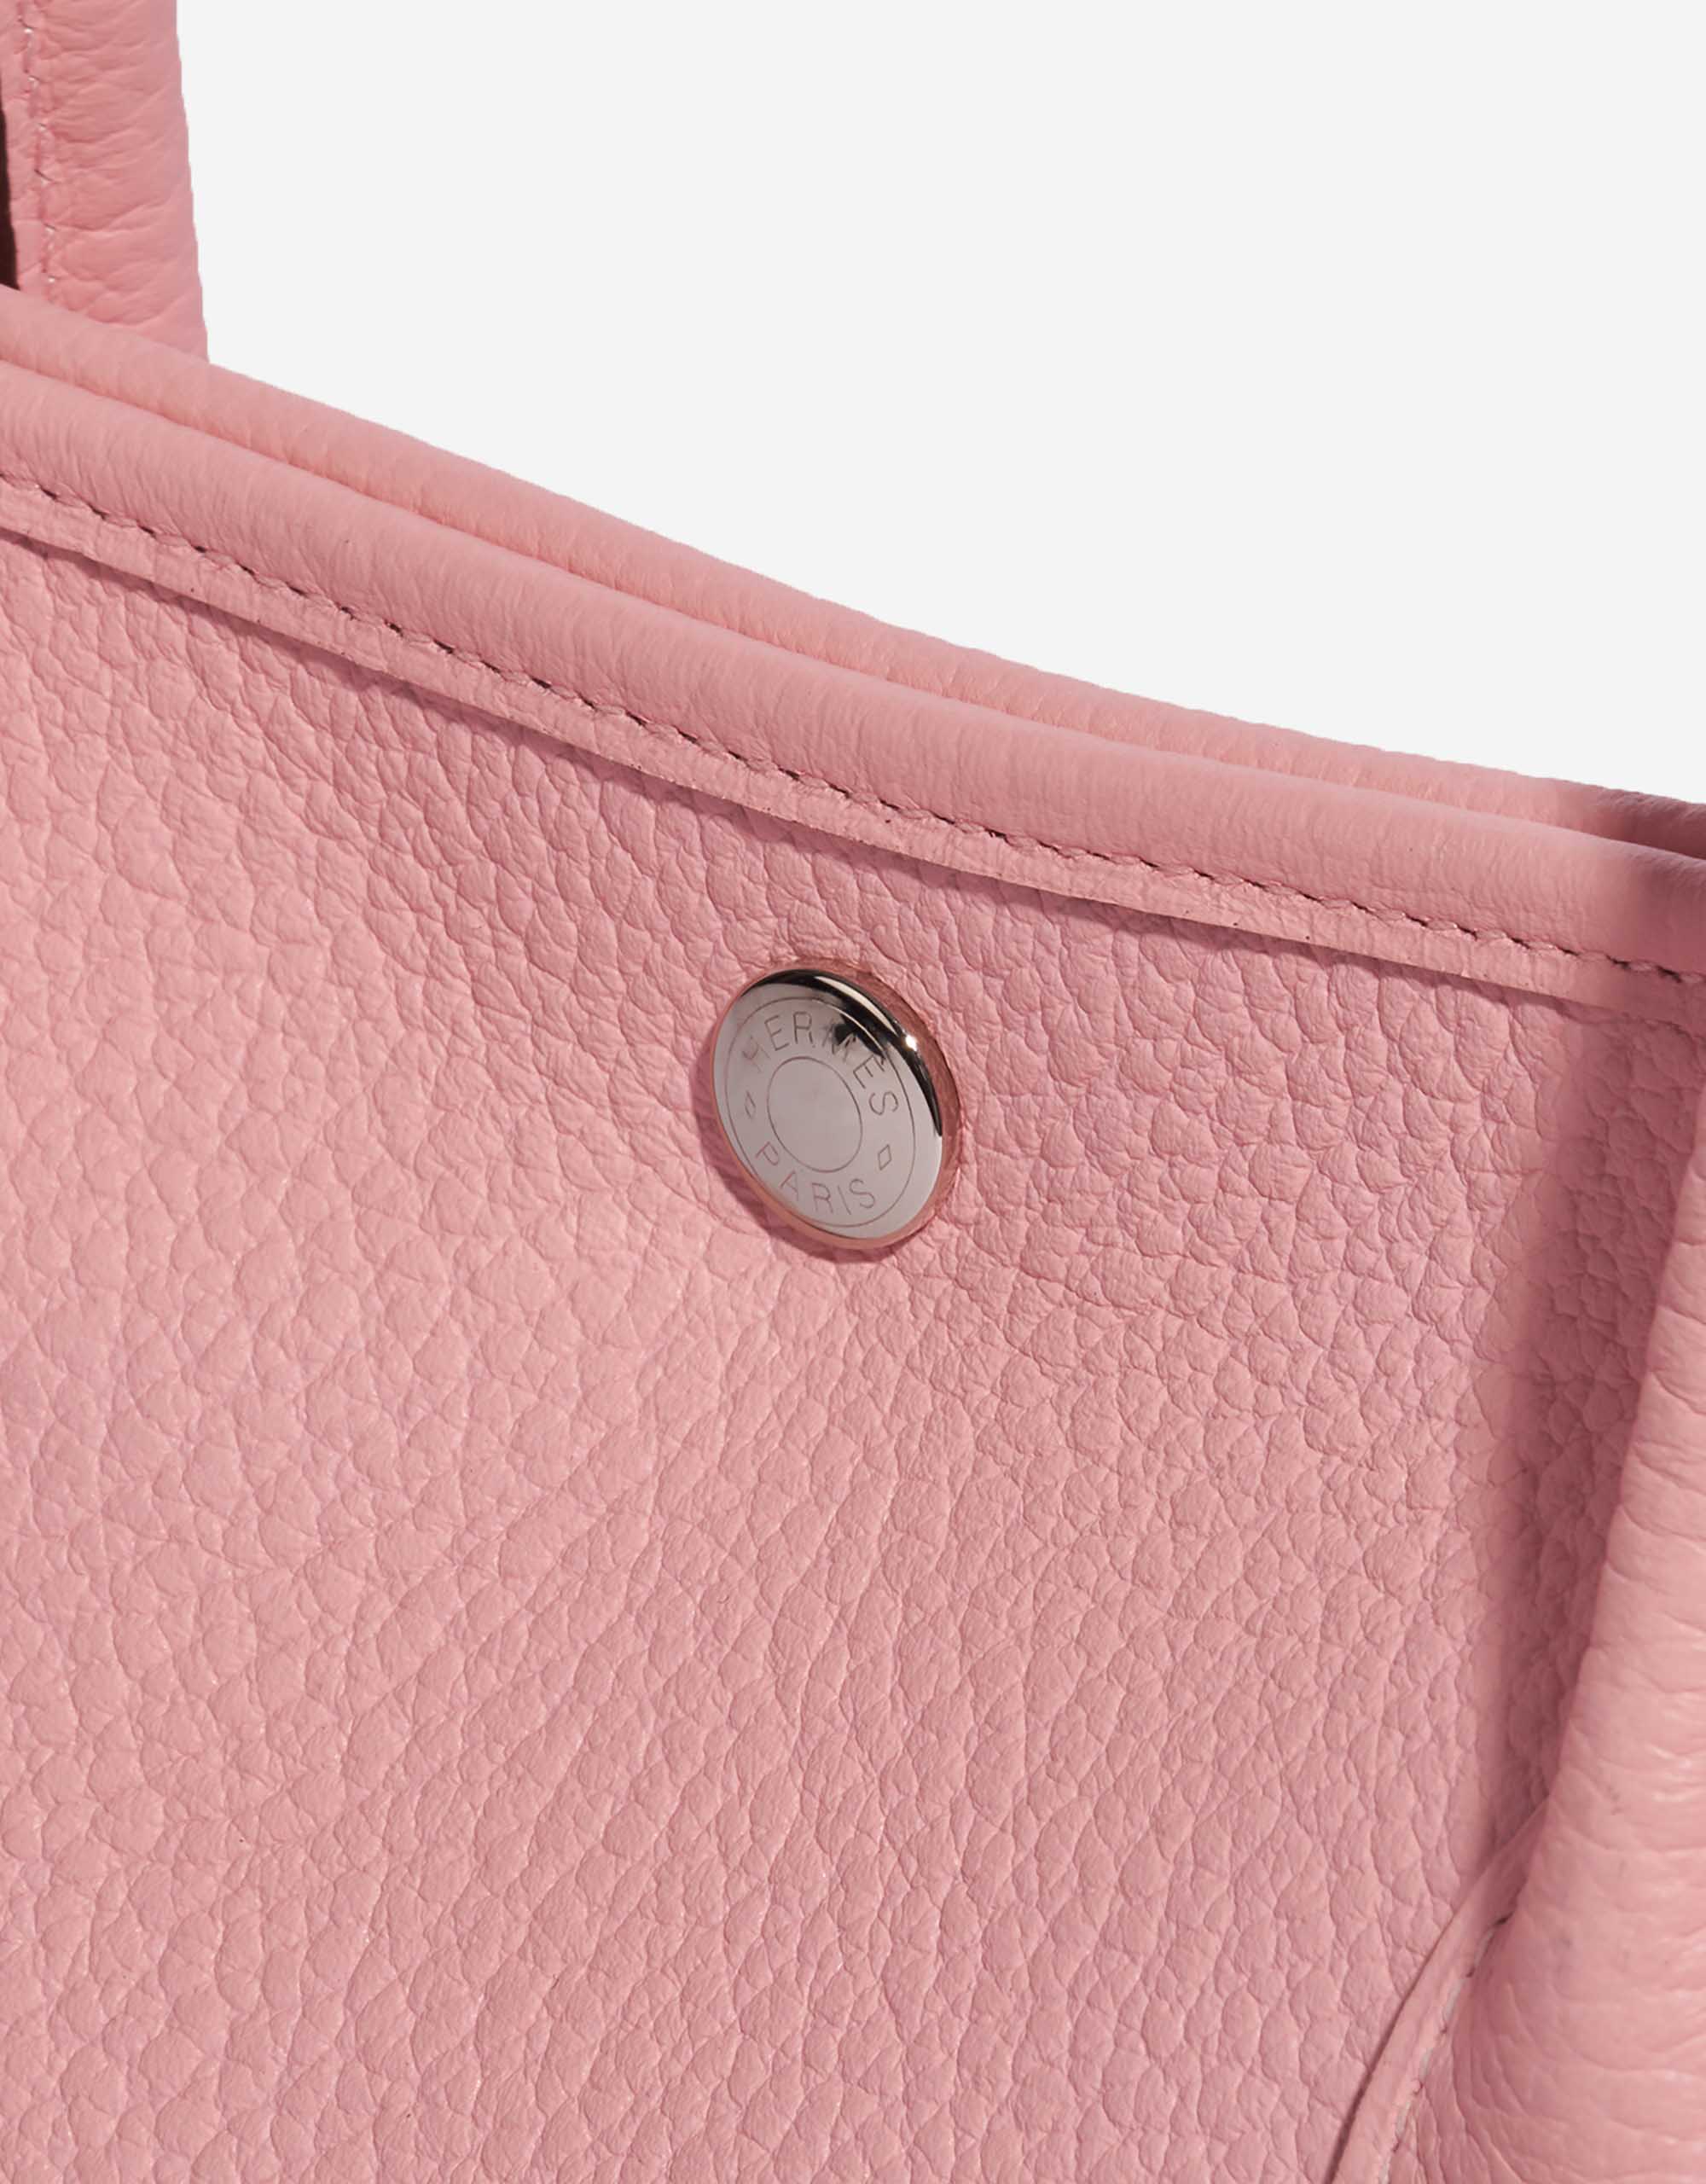 Gebrauchte Hermès Tasche Garden Party 36 Clemence Rose Sakura Pink Verschlusssystem | Verkaufen Sie Ihre Designer-Tasche auf Saclab.com